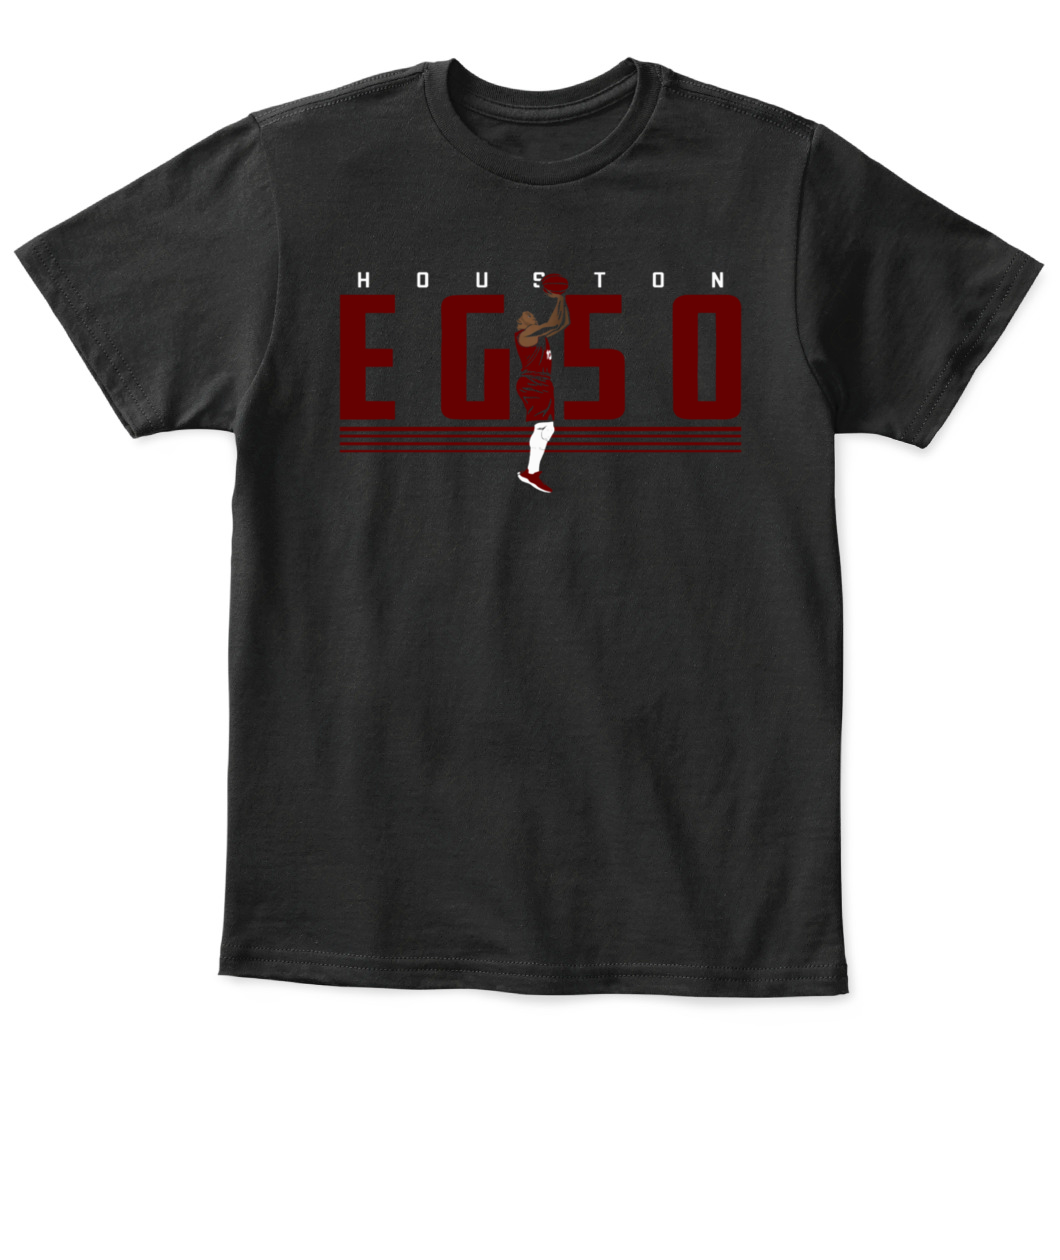 EG50 T-Shirt - Ellie Shirt